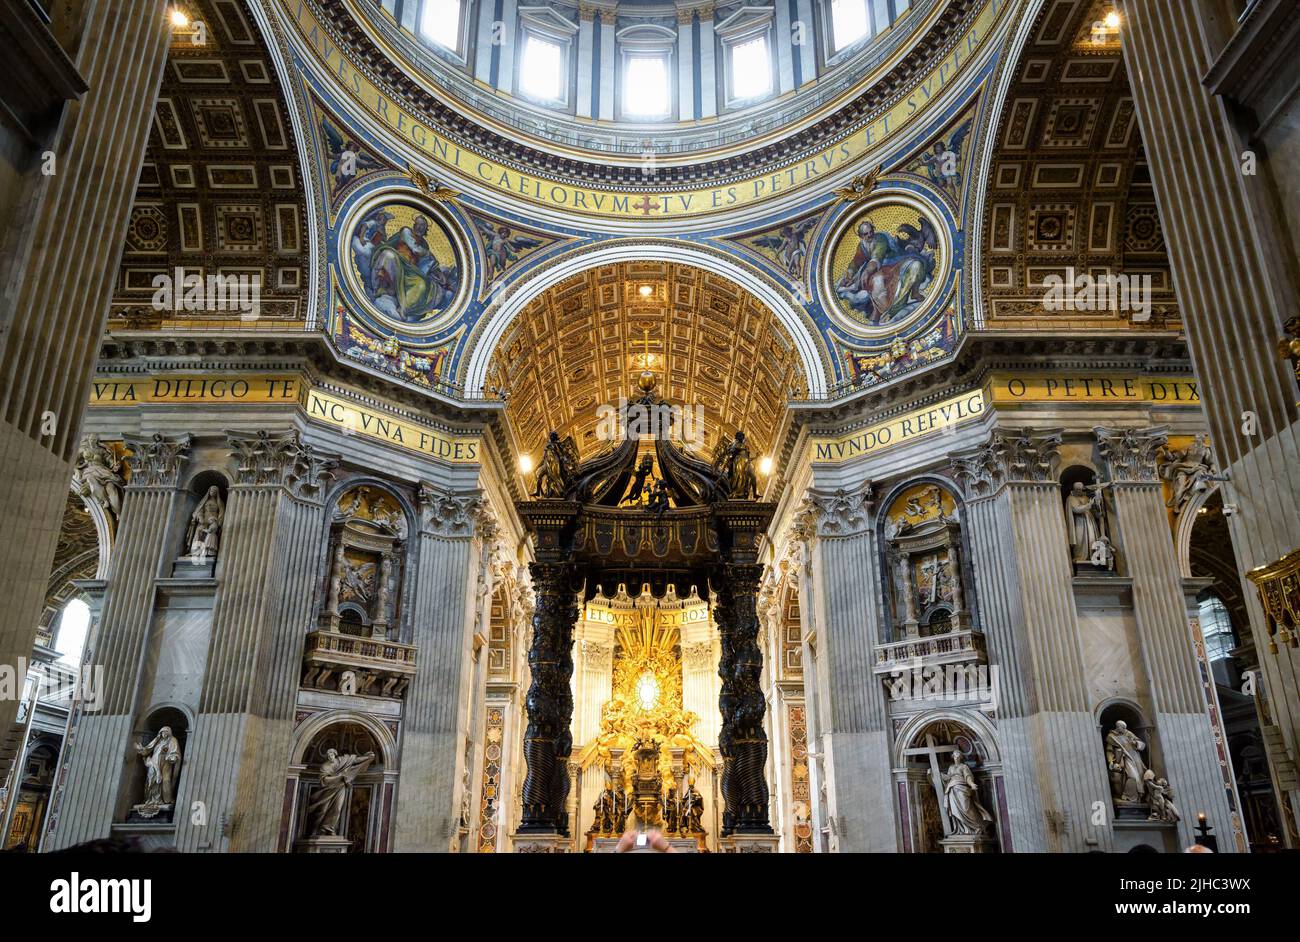 Roma - 12-jun-2021: Dentro de la Basílica de San Pedro, Roma, Italia. La catedral de San Pedro es uno de los principales lugares de interés de Roma y la Ciudad del Vaticano. Interior barroco ornamentado o Foto de stock